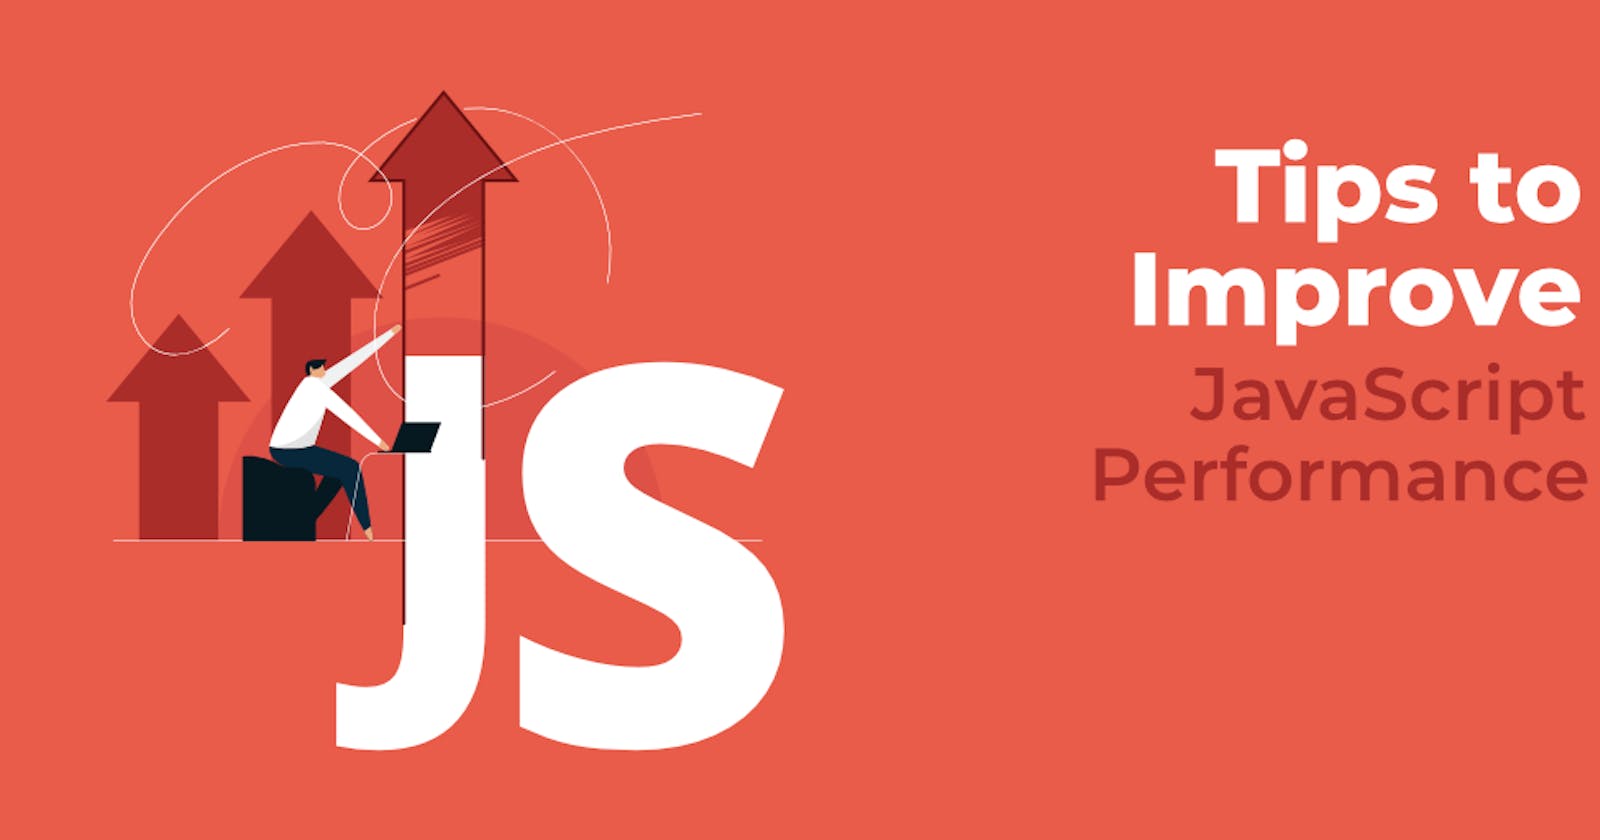 JavaScript Performance Tips